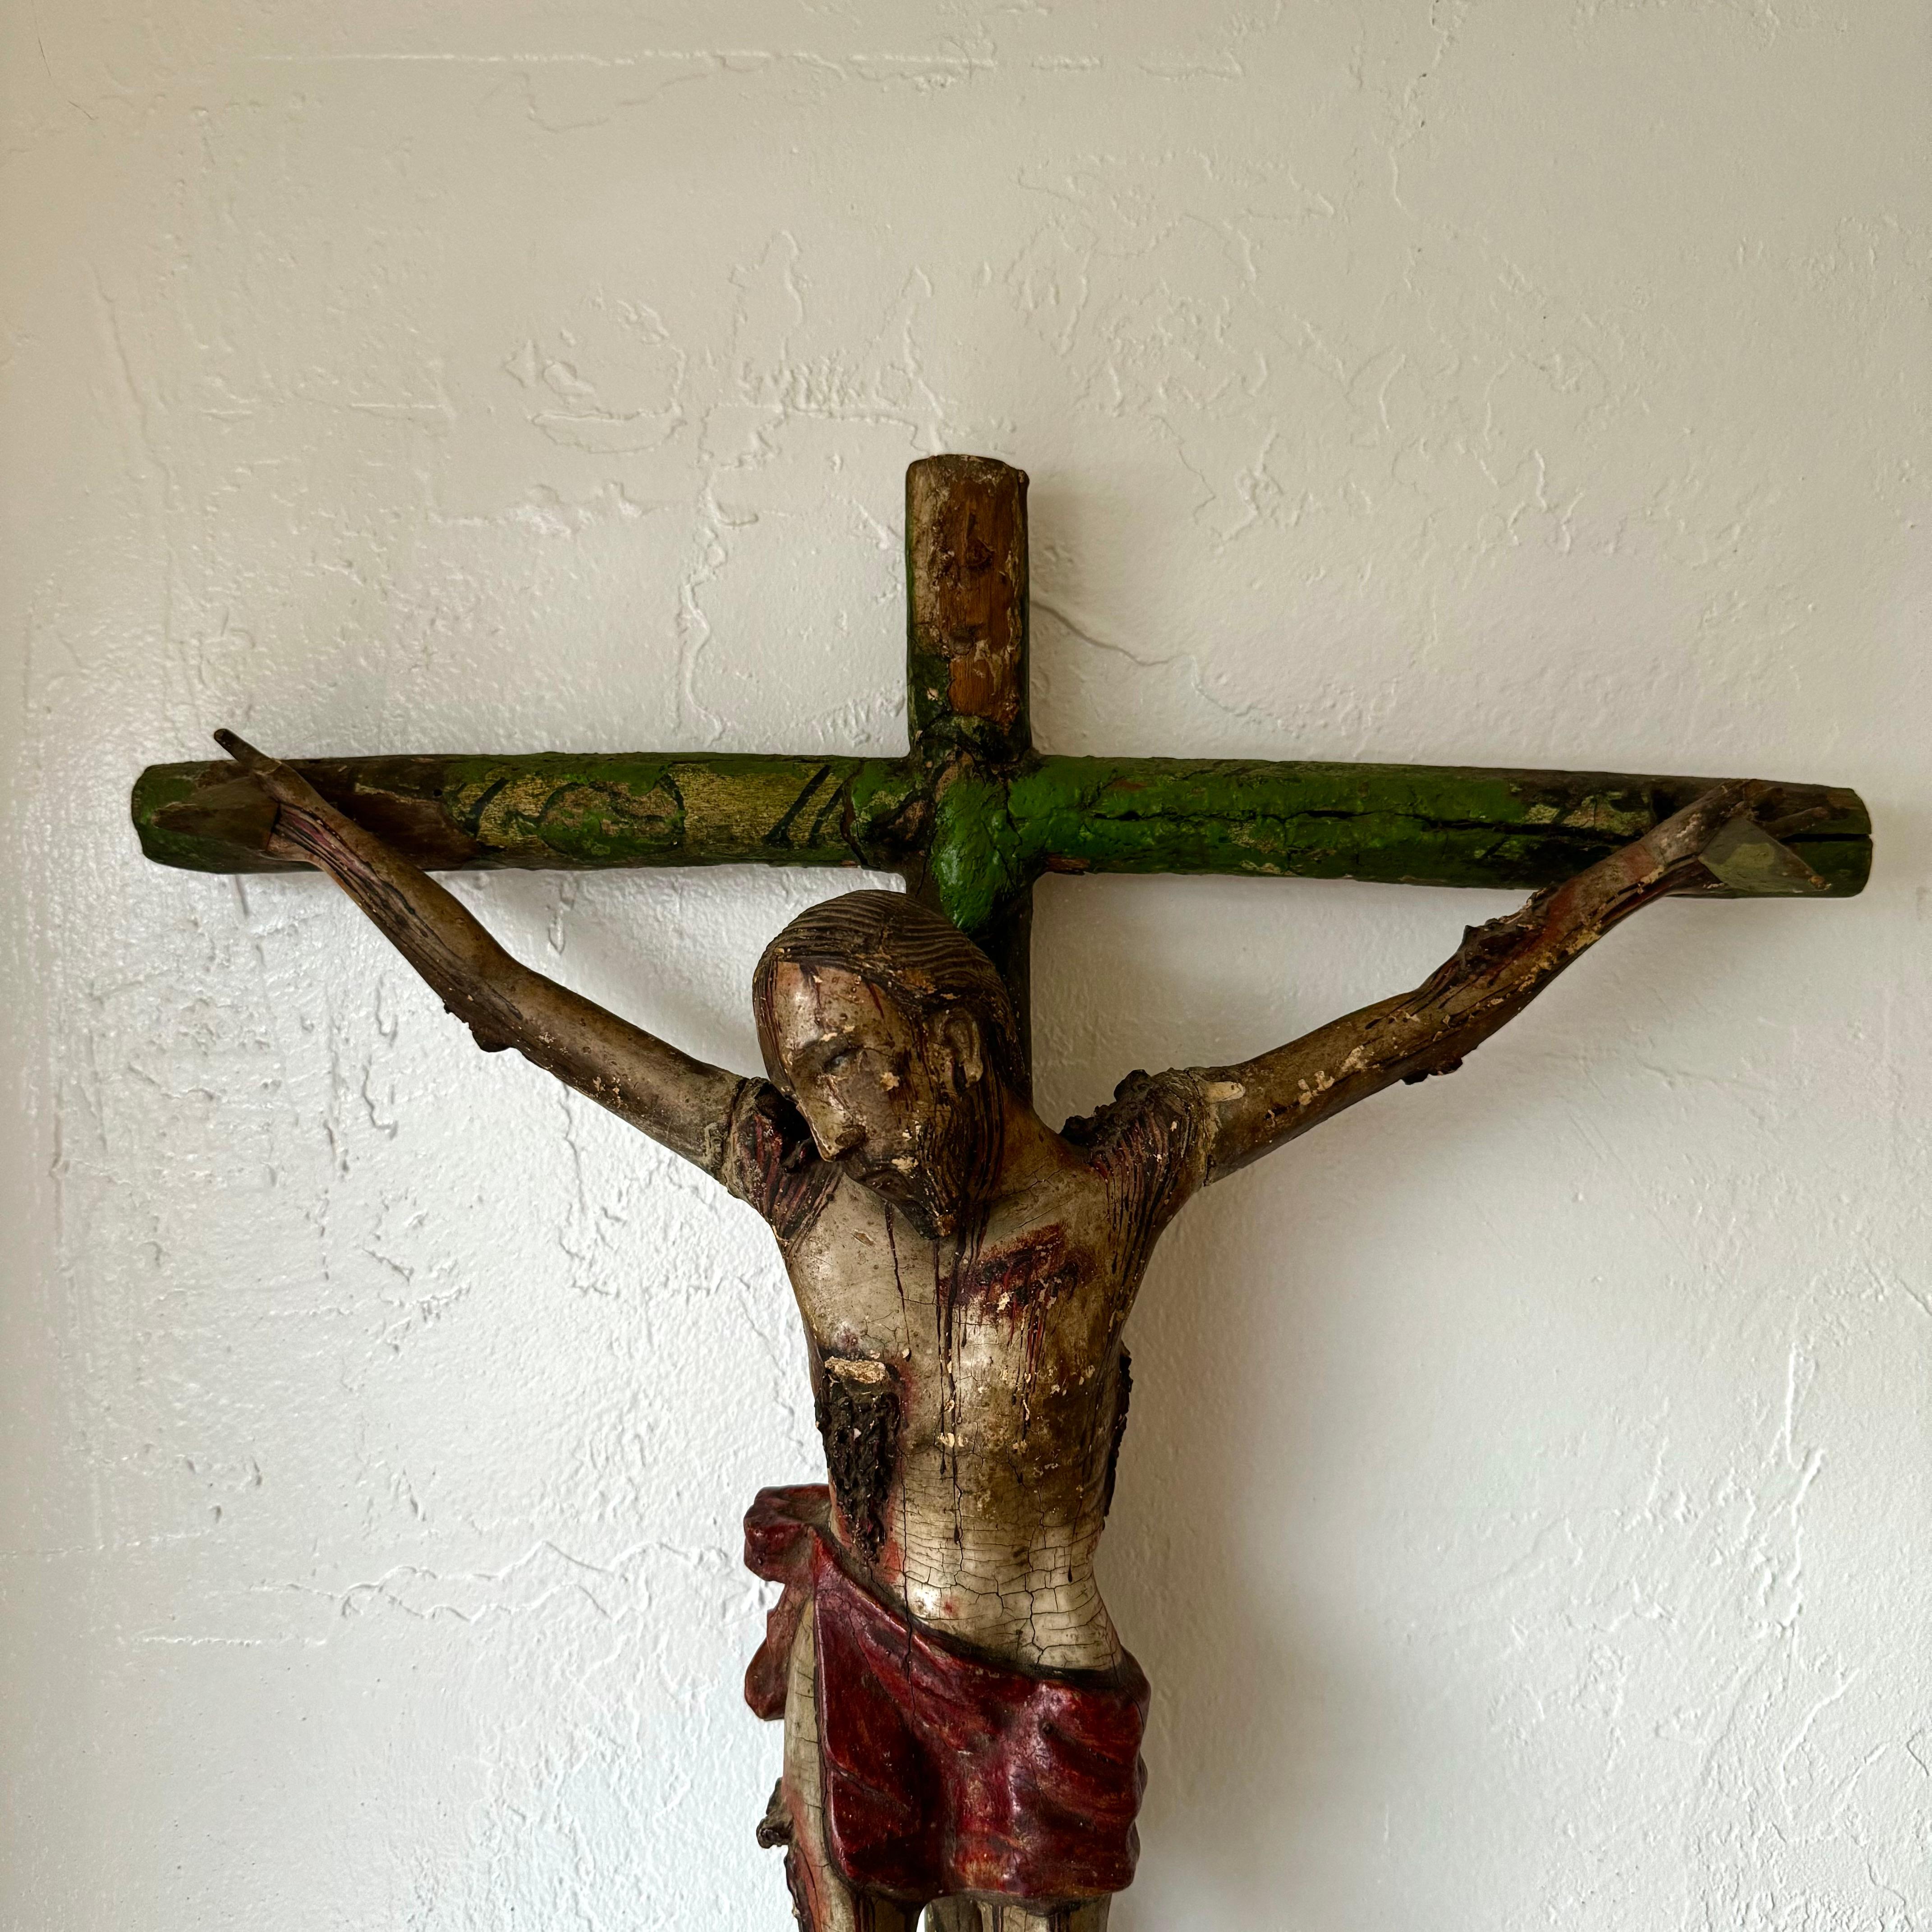 Nous vous proposons ce Cristo magnifiquement sculpté, peint et détaillé, représentant Jésus cloué sur la croix. J'ai demandé à un expert de l'examiner et il pense que le personnage de Jésus date du 17e siècle et que la croix date probablement du 18e